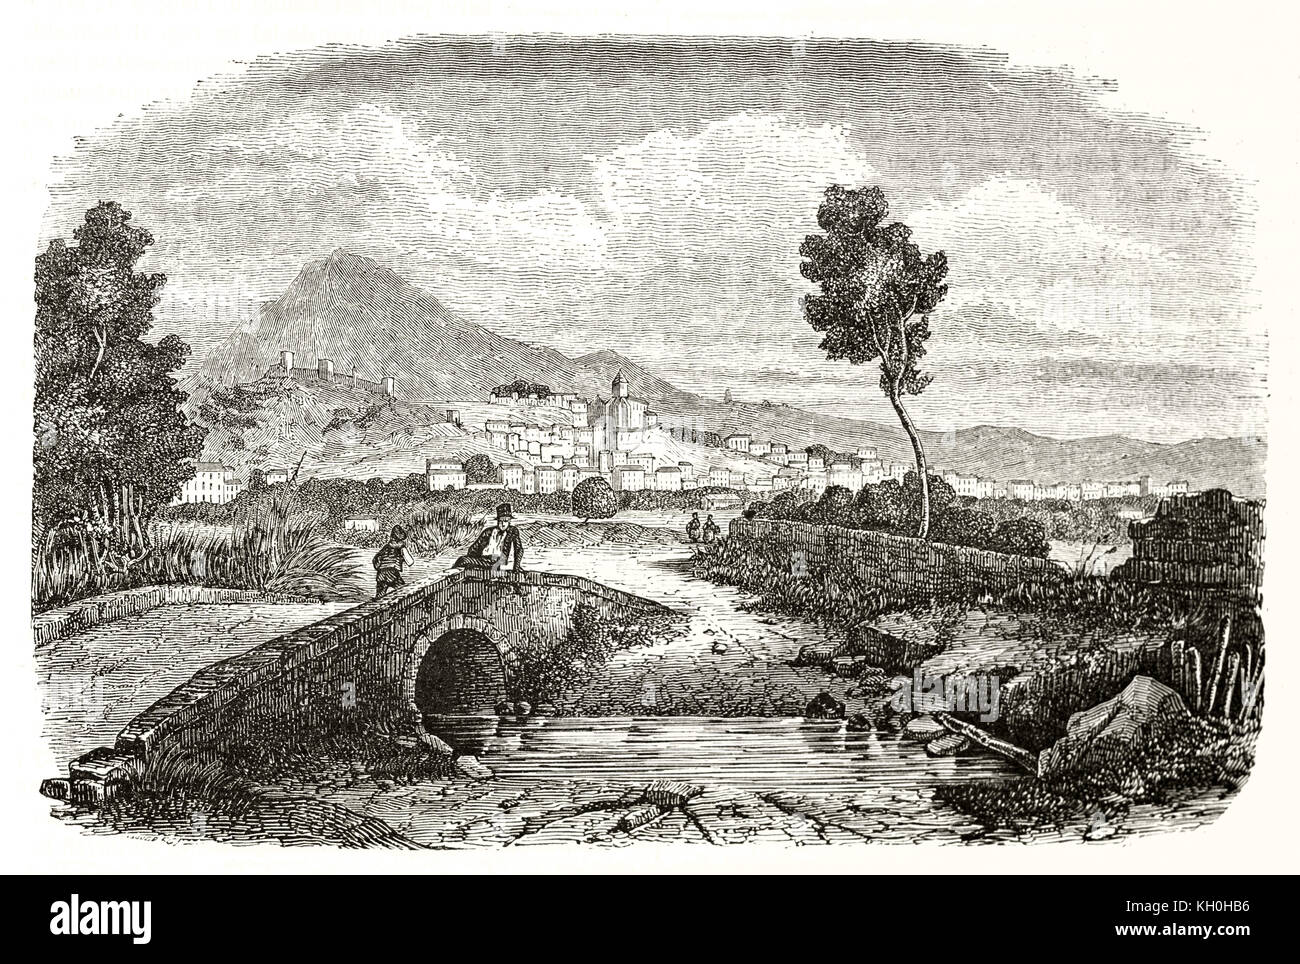 Vue ancienne de Hyères, France. Par Denis, publ. sur Magasin Pittoresque, Paris, 1847 Banque D'Images